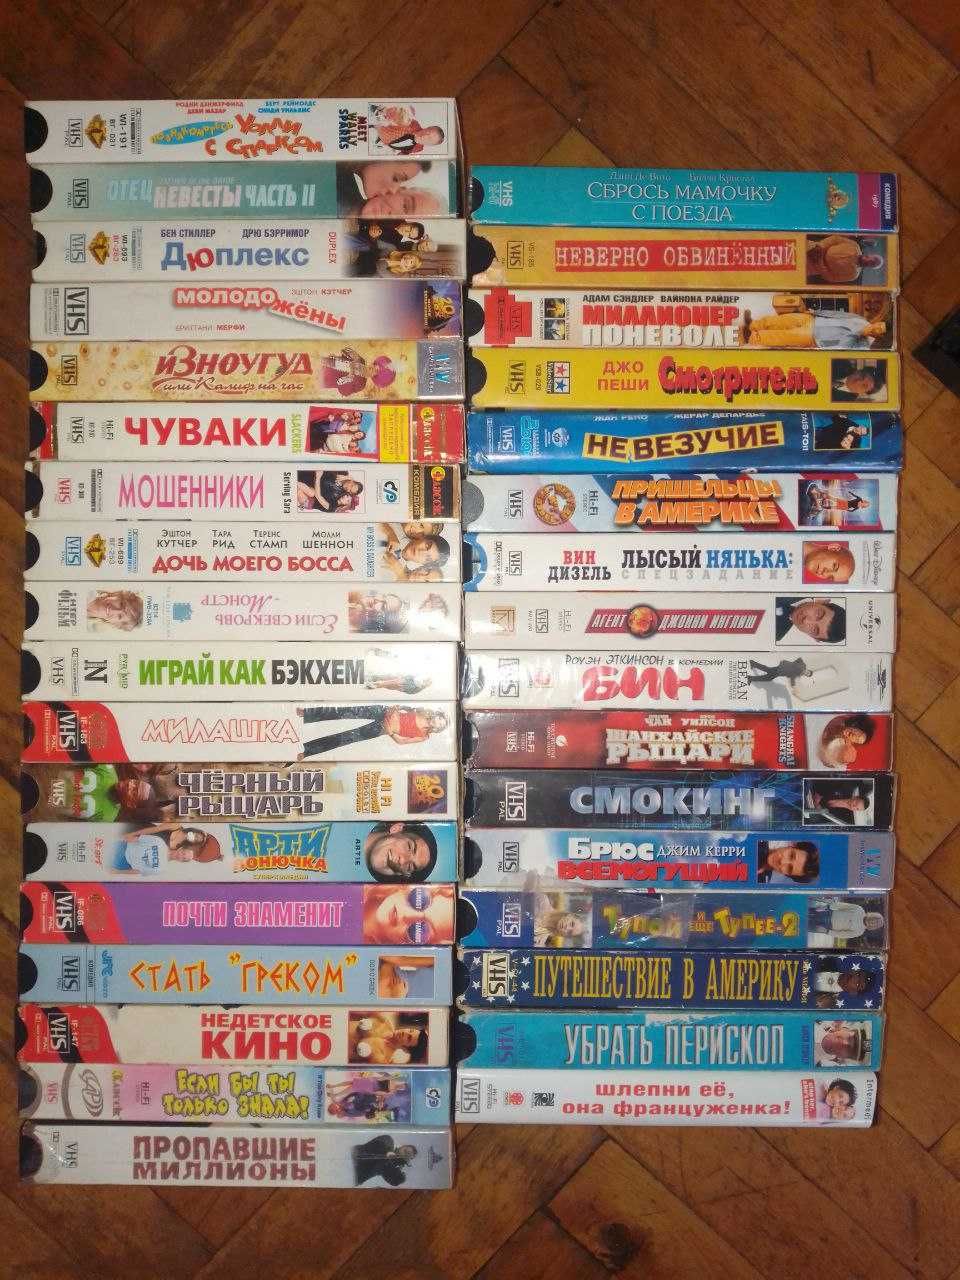 Видеокассеты VHS Мистер Бин, Путешествие в Америку, Недетское кино